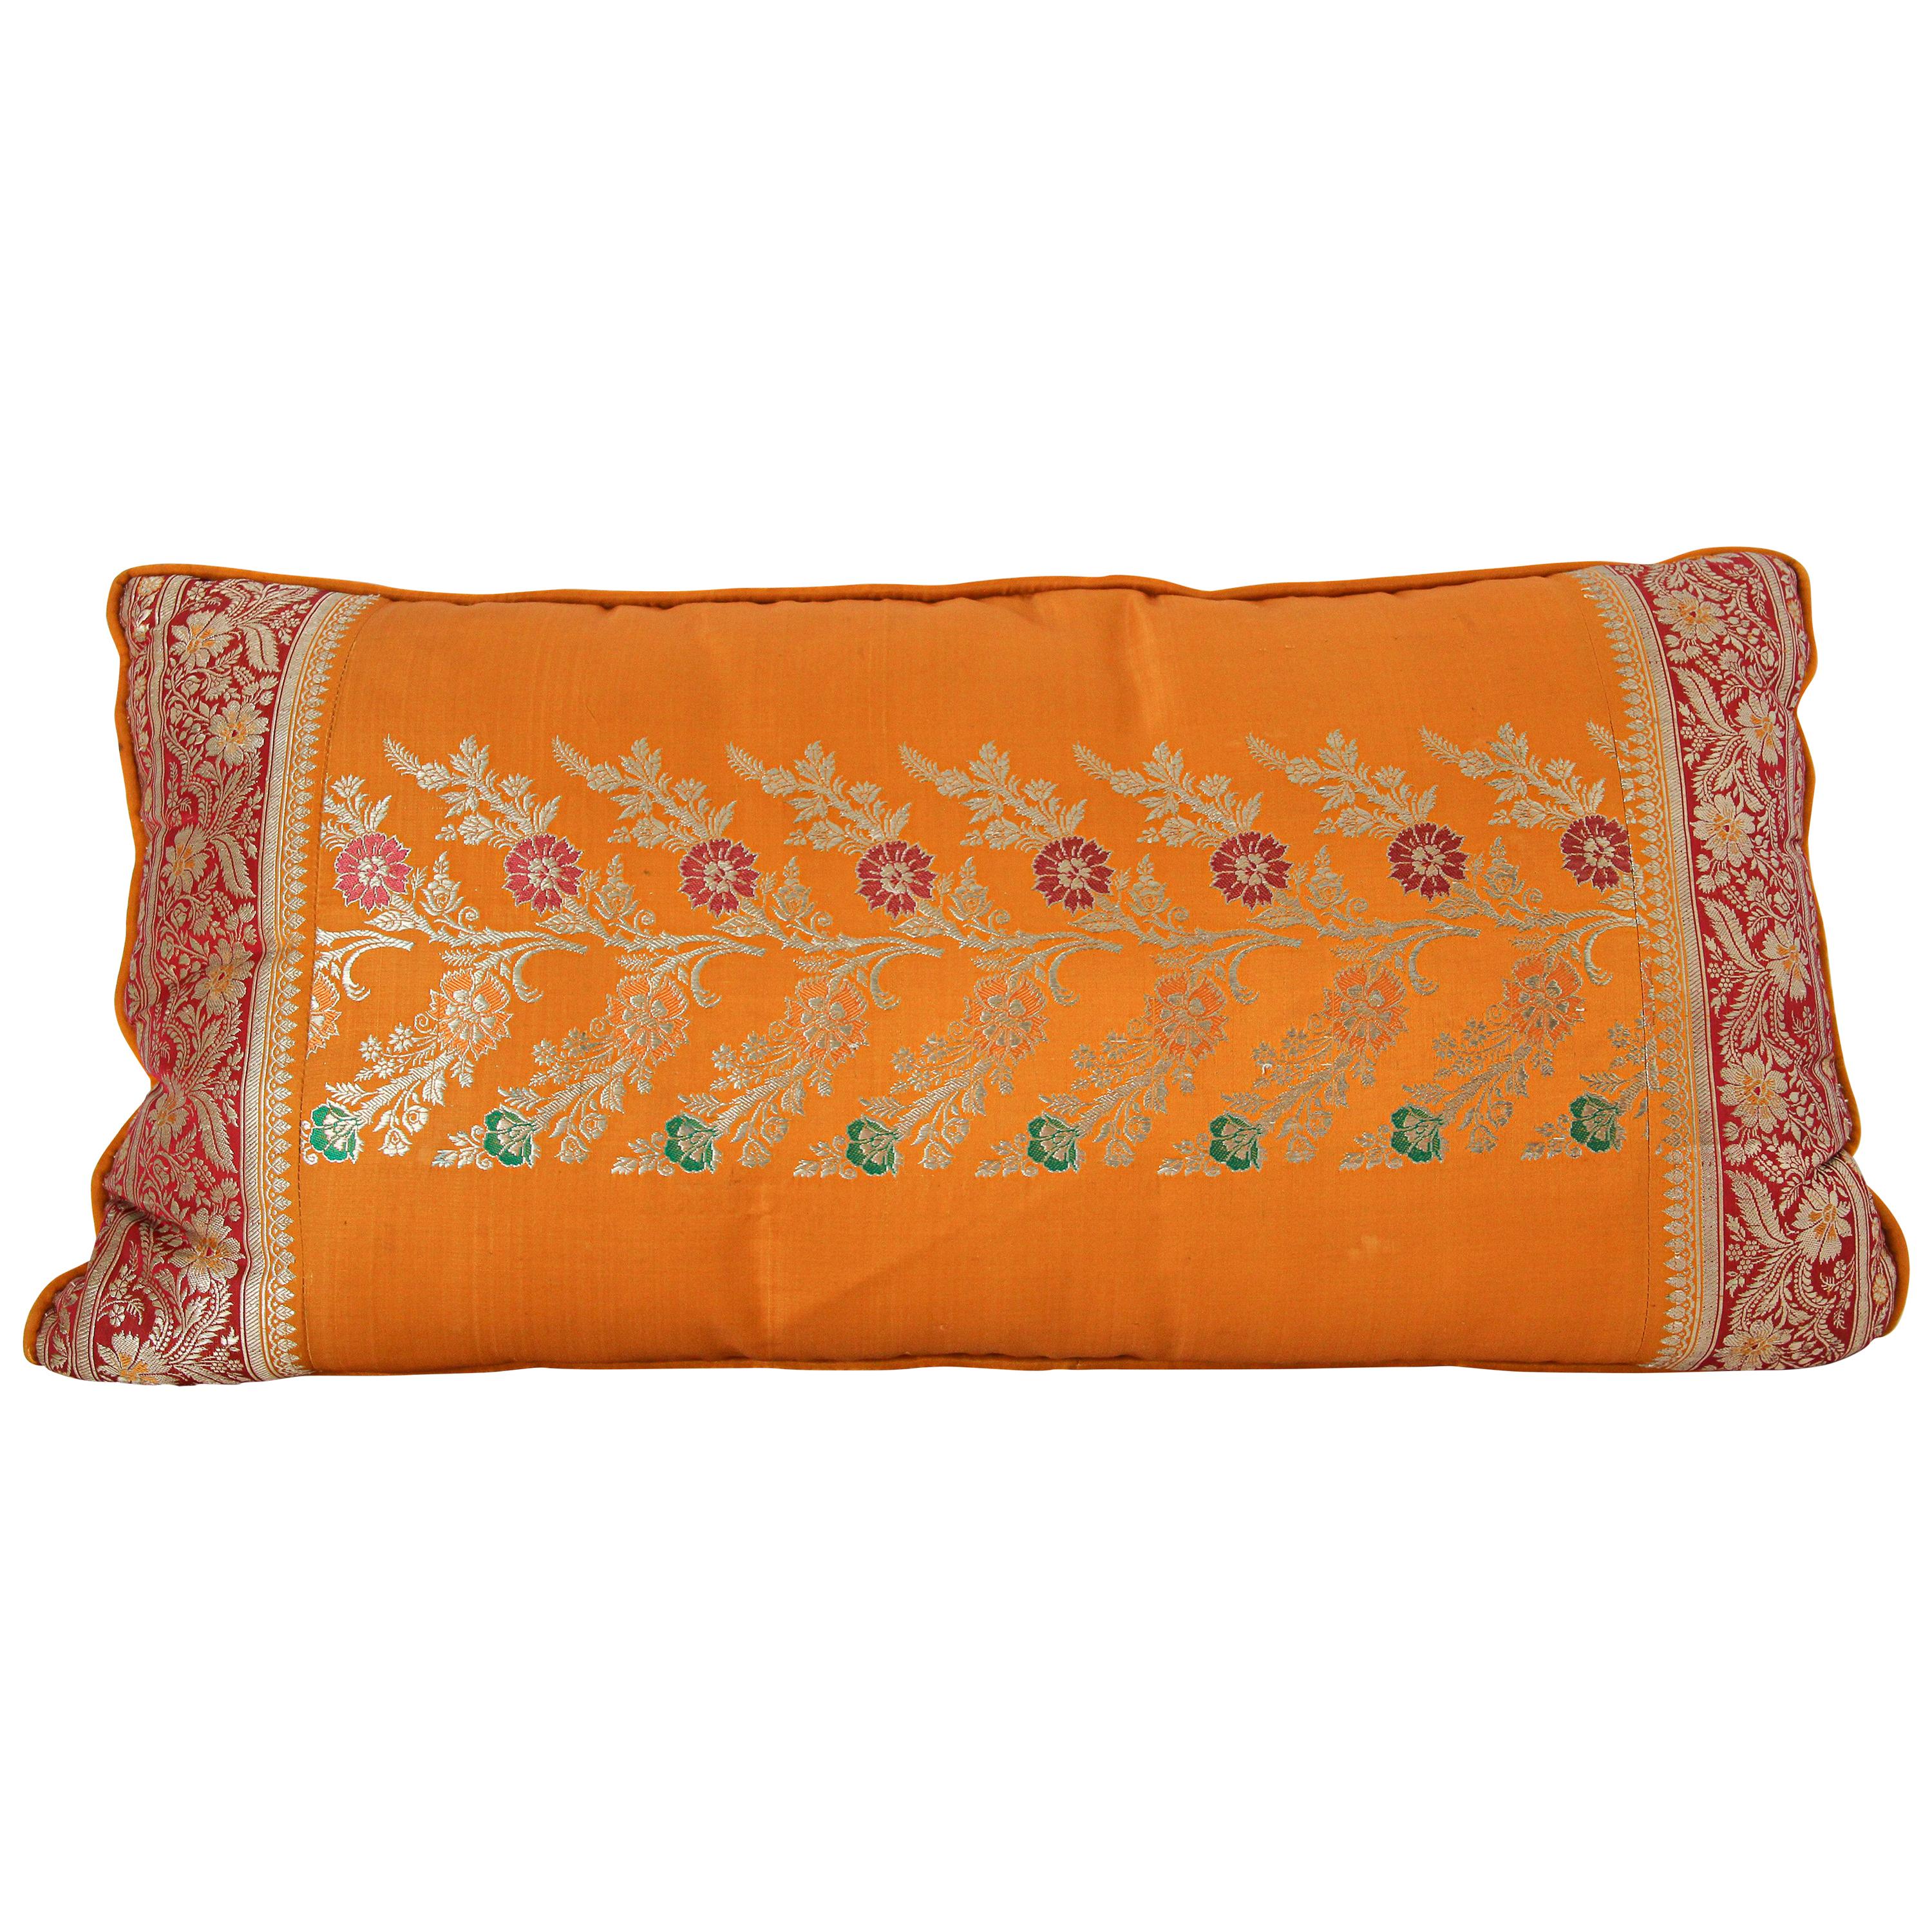 Coussin en soie fait sur mesure à partir d'un Sari orange de mariage, Inde